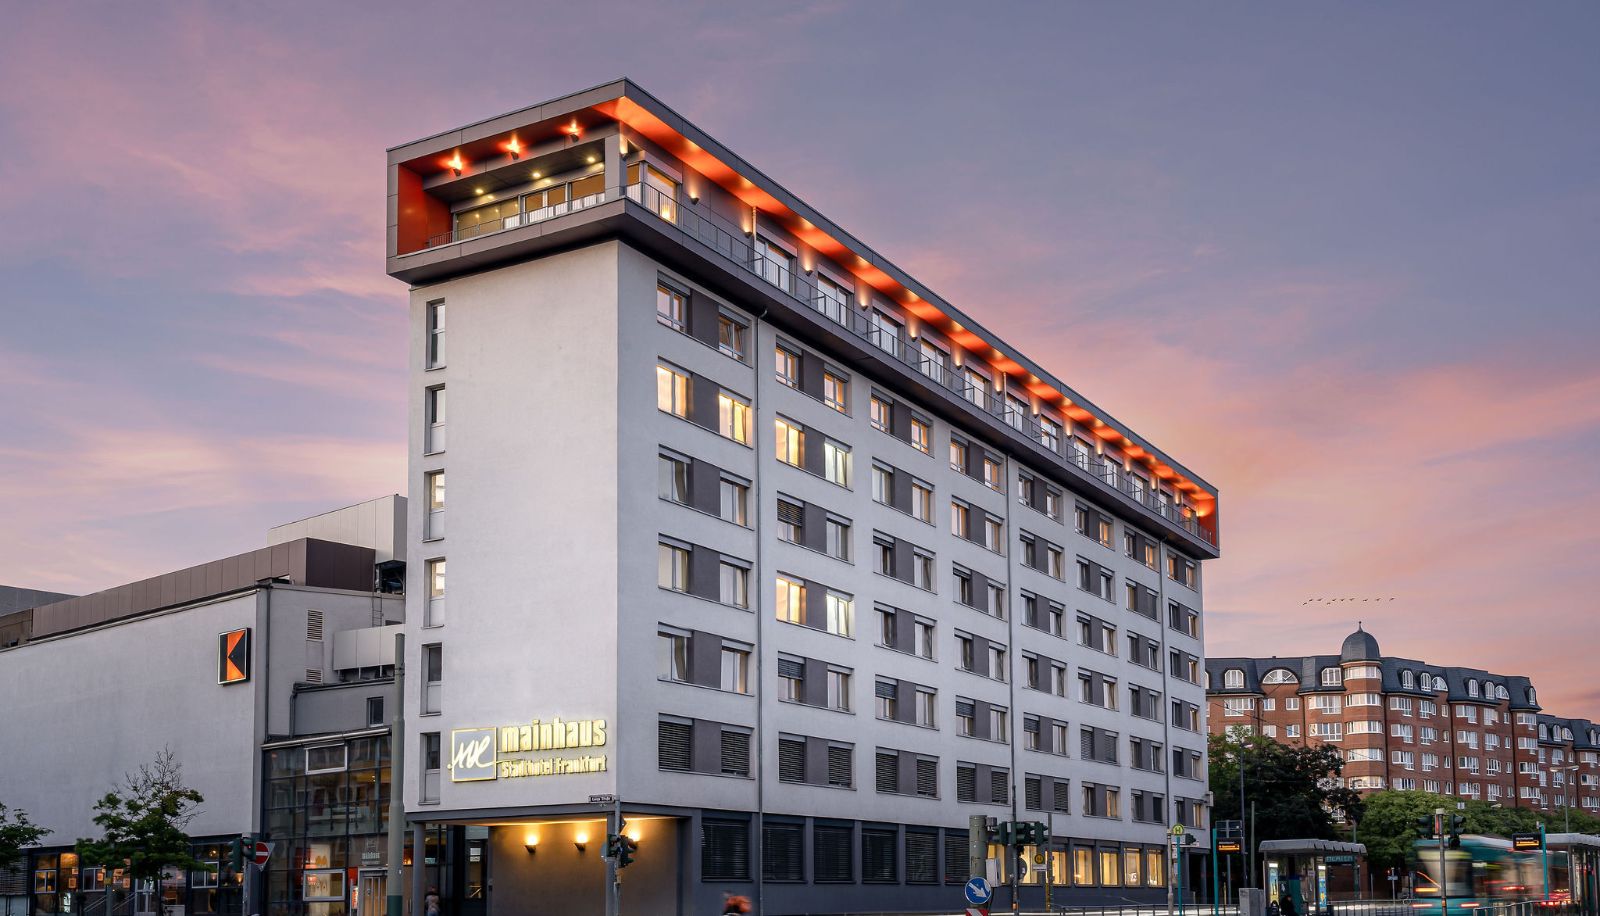 Hotel mainhaus (Frankfurt nad Menem)